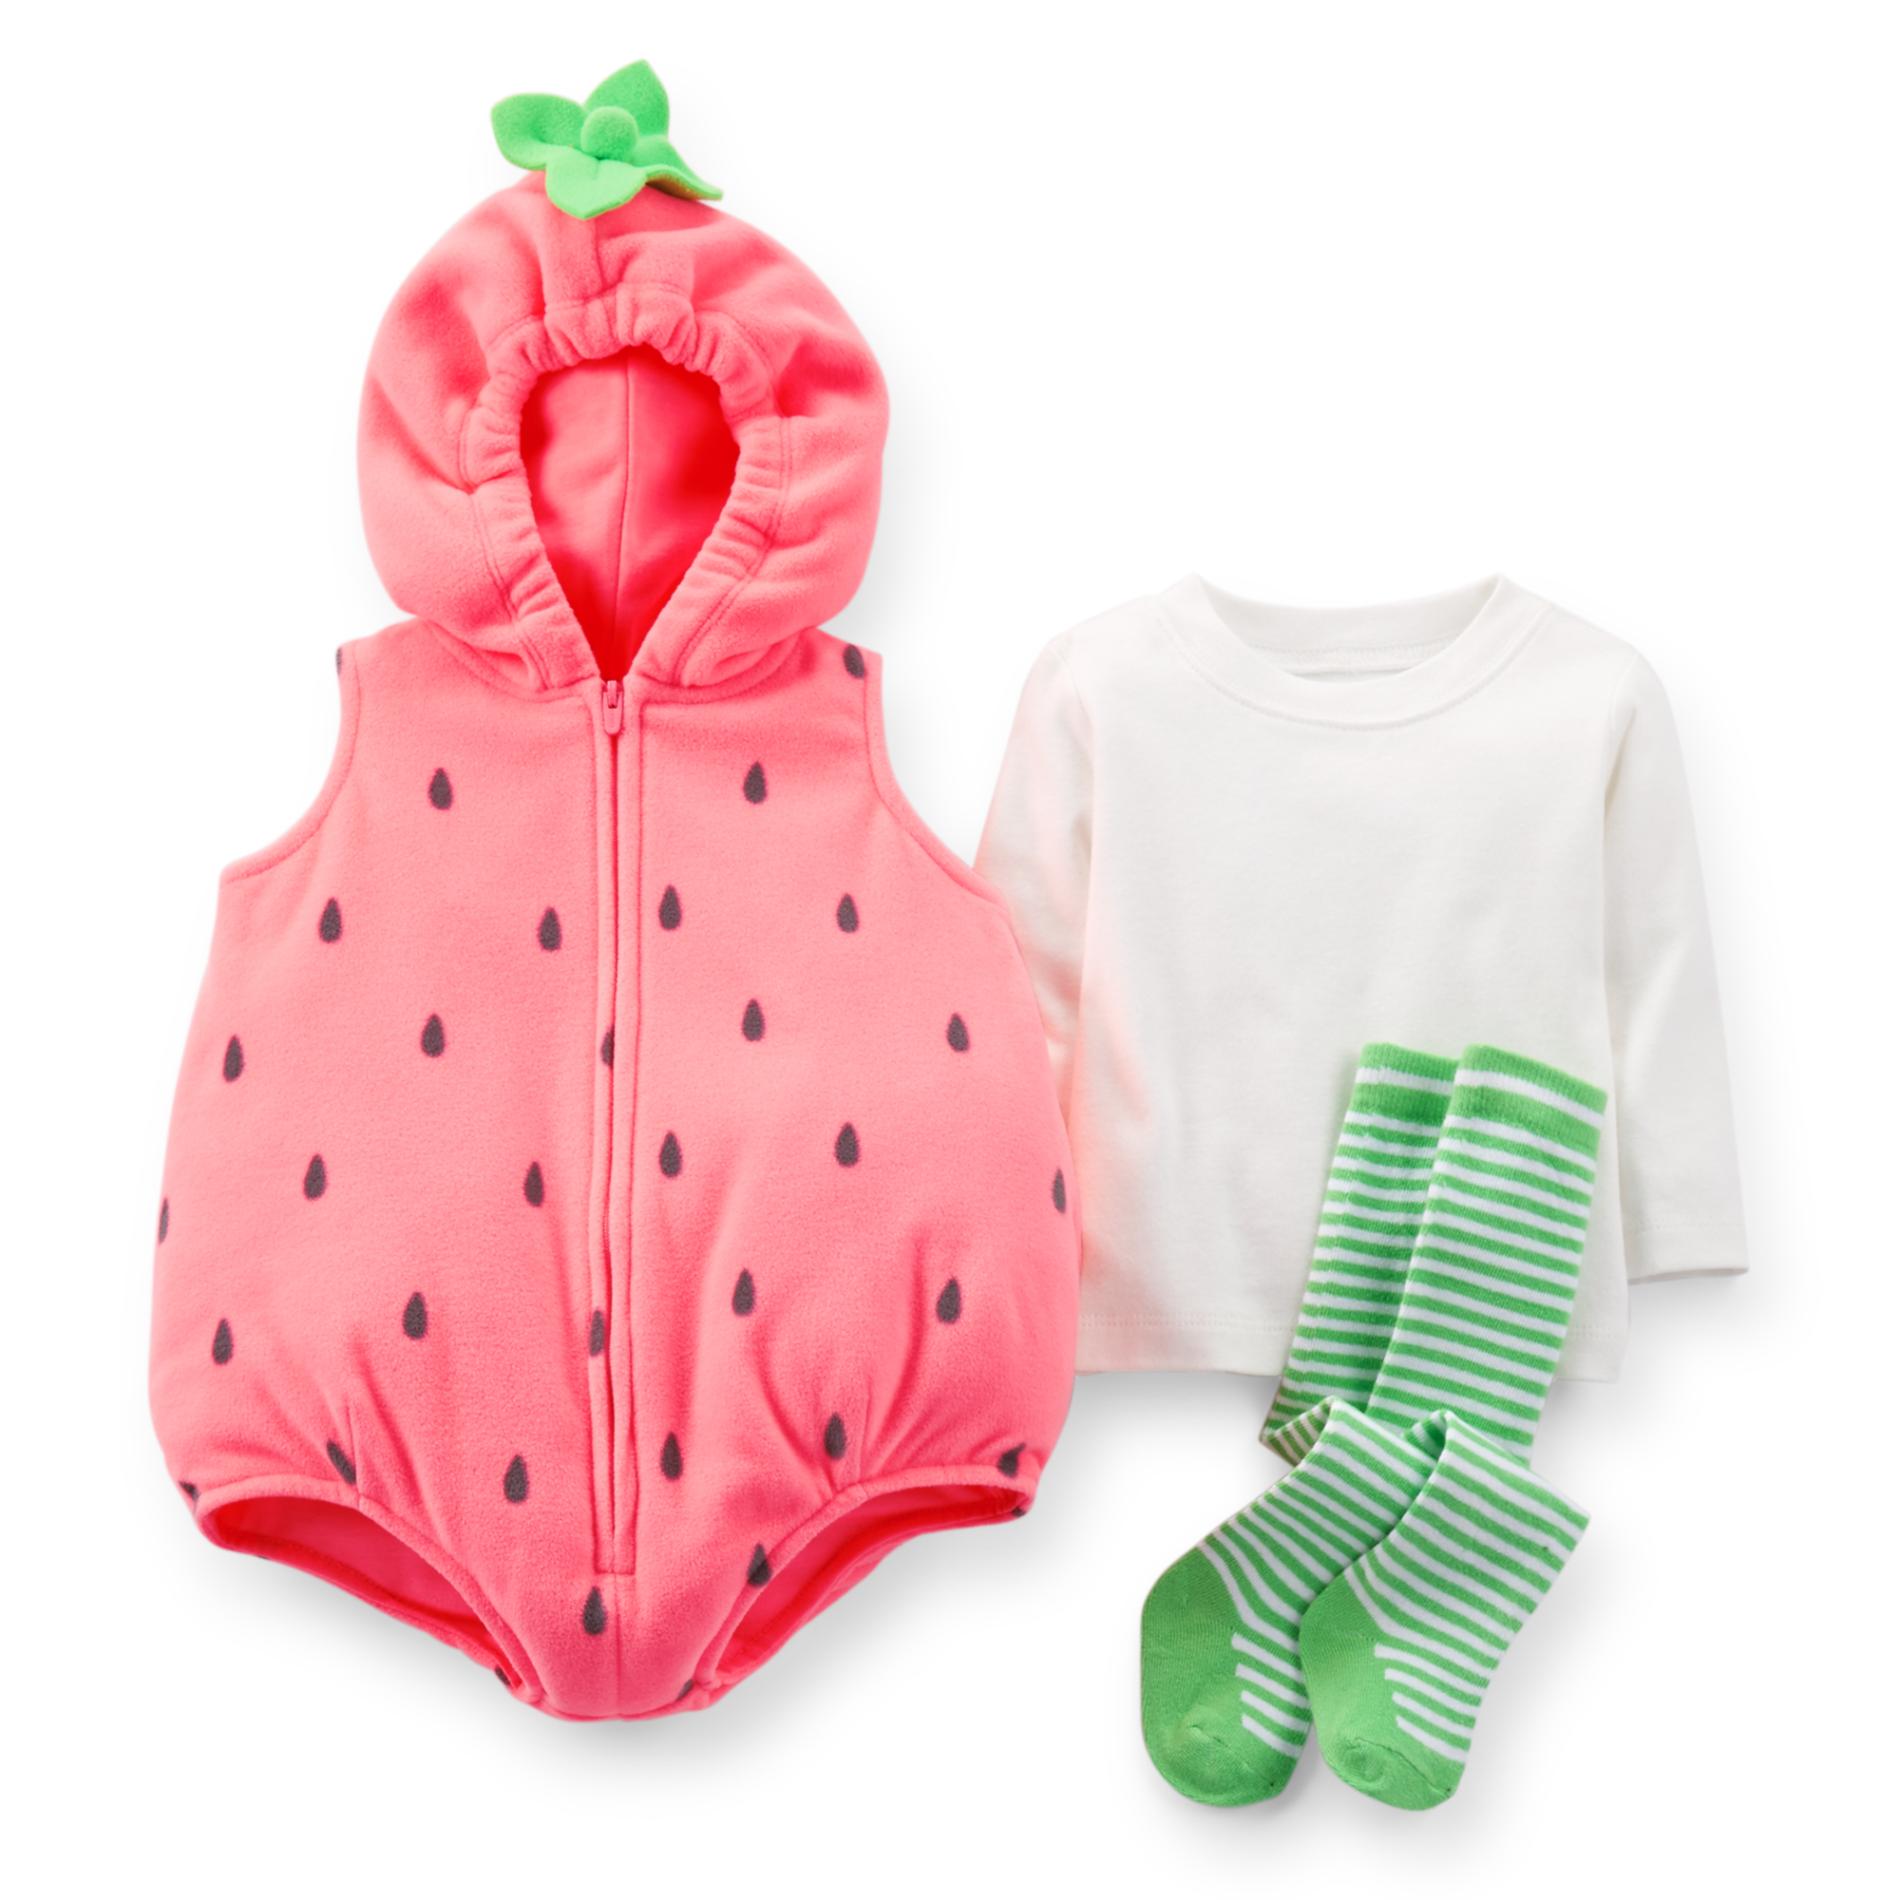 Carter's Infant Girl's Strawberry Costume